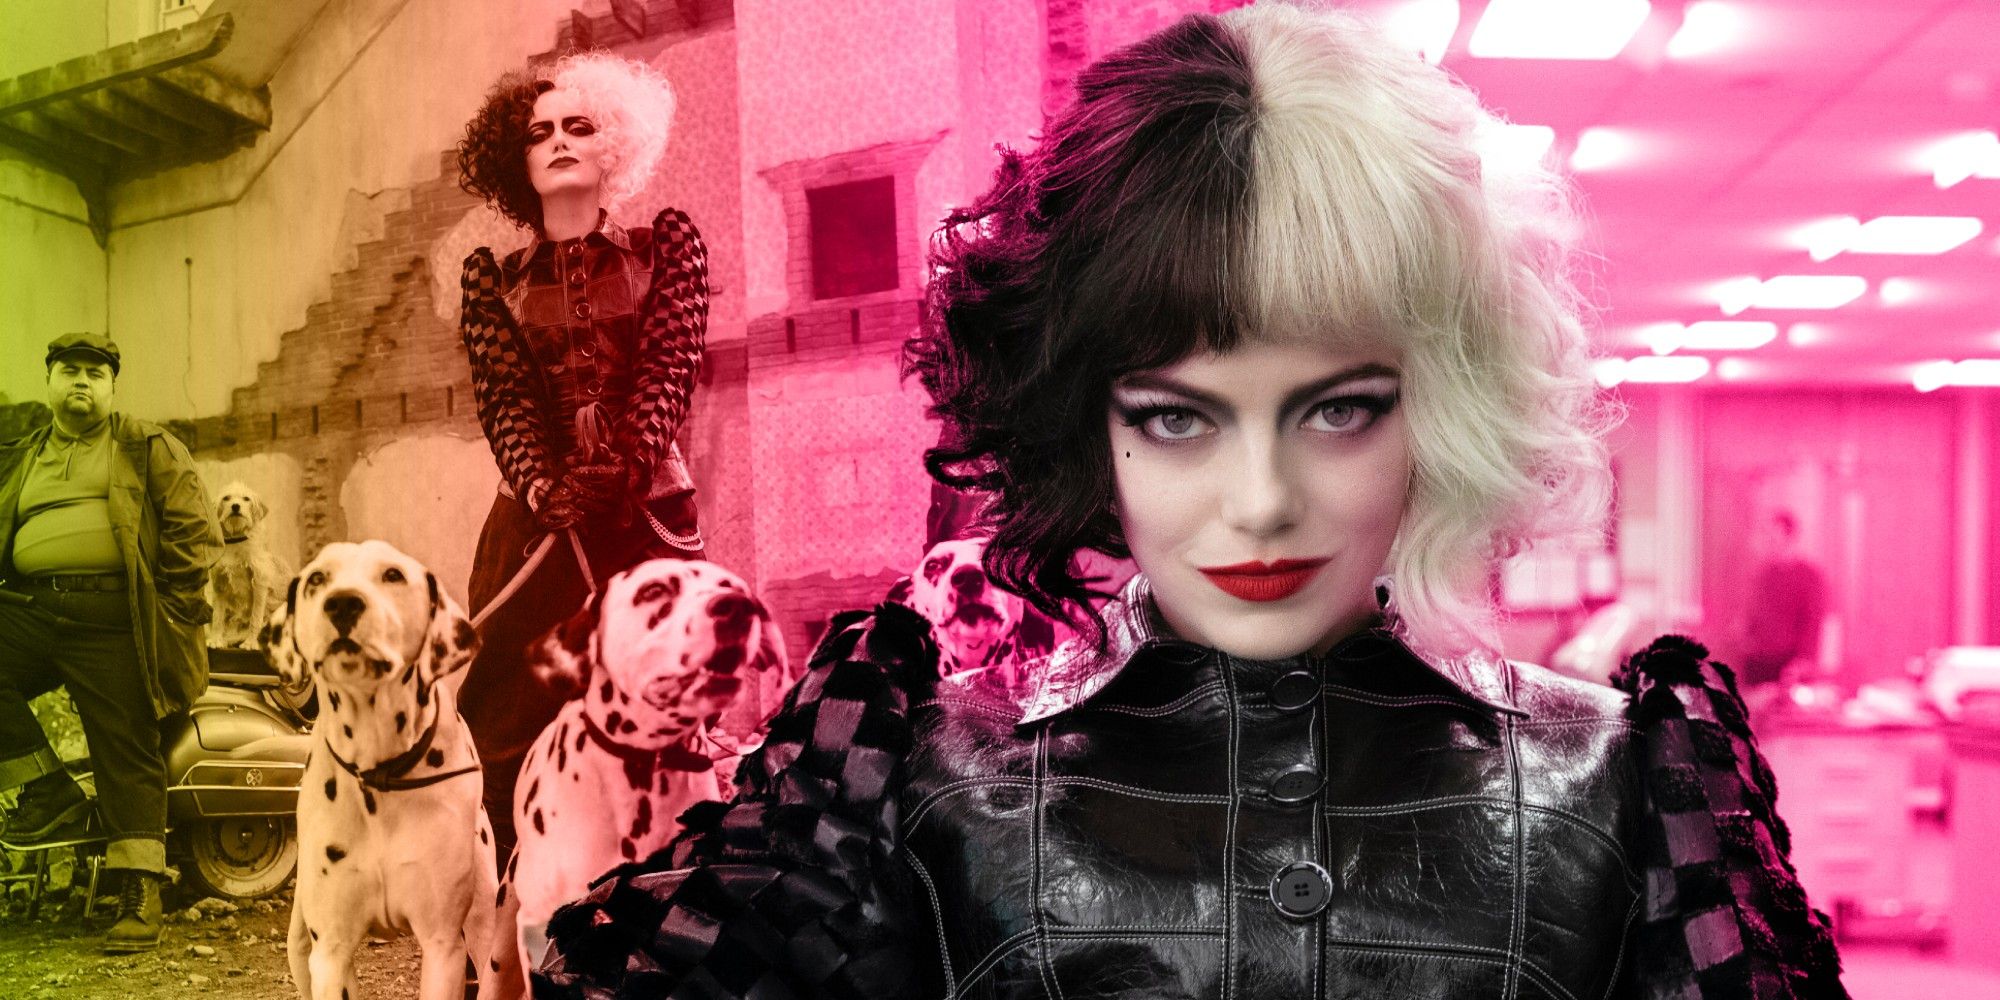 Emma Stone's New Cruella De Vil Image Will Give You A Sudden Chill